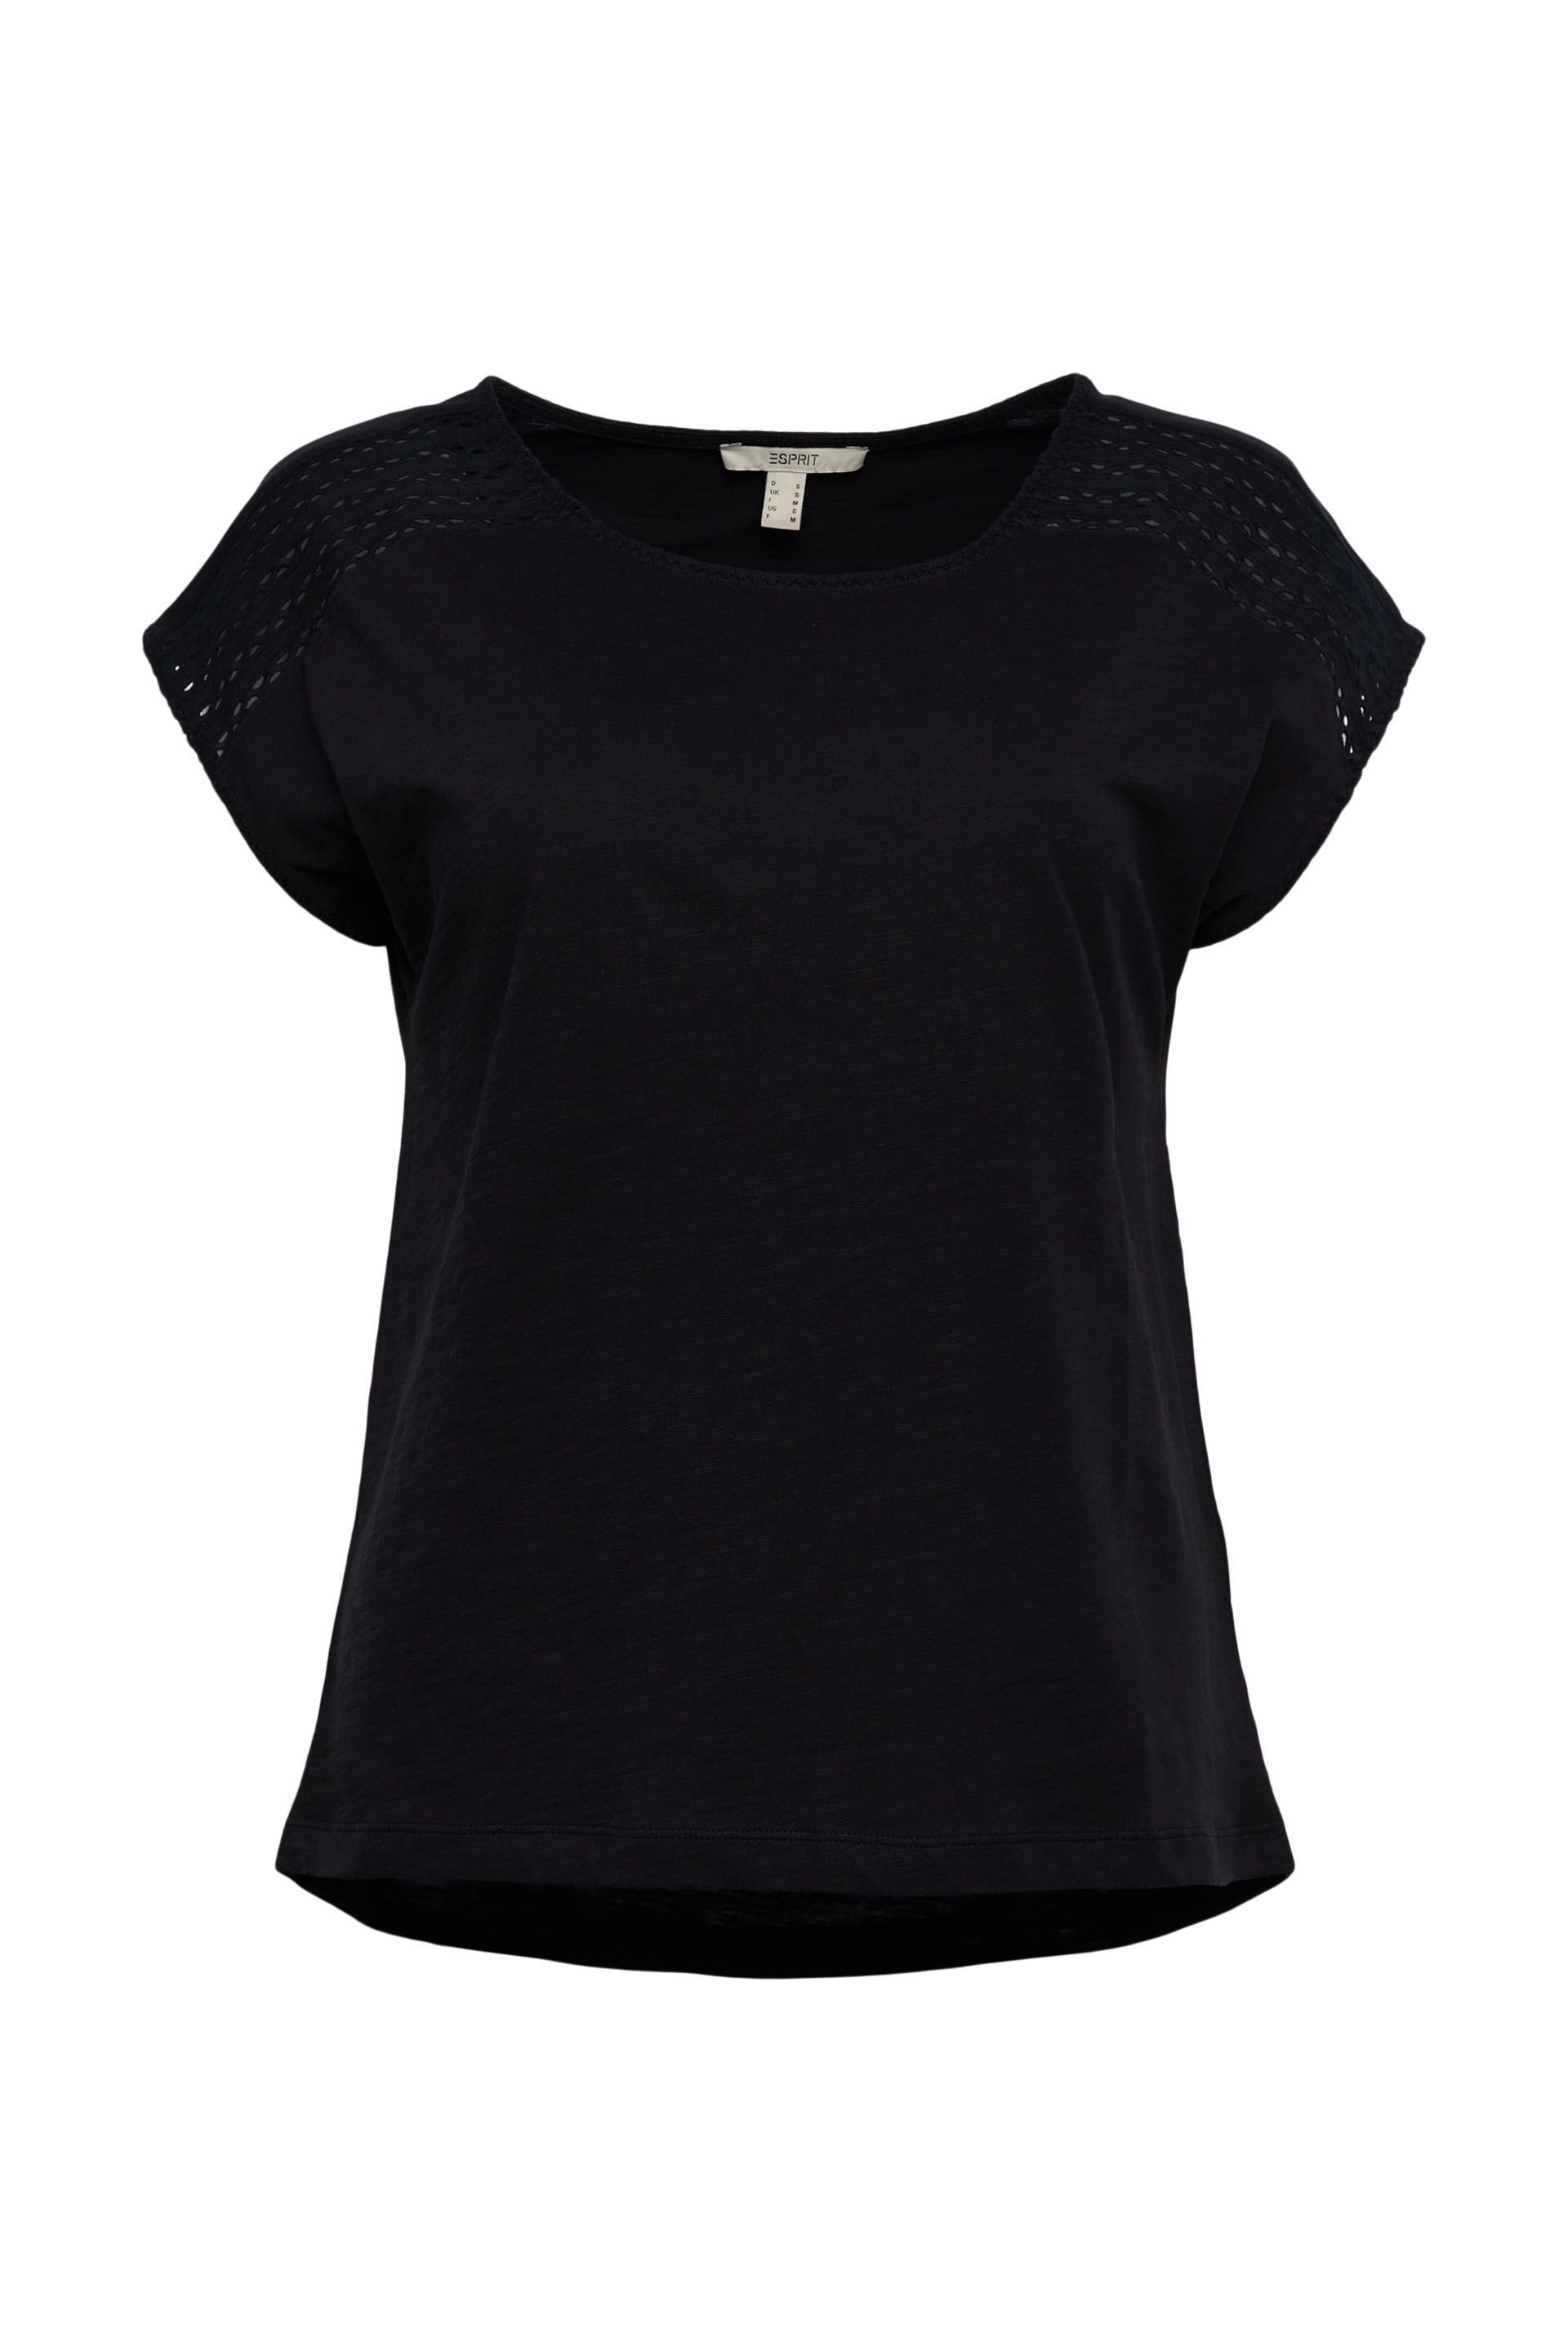 Rekwisieten Acteur Supermarkt Esprit shirt met kant zwart 062EE1K308 001